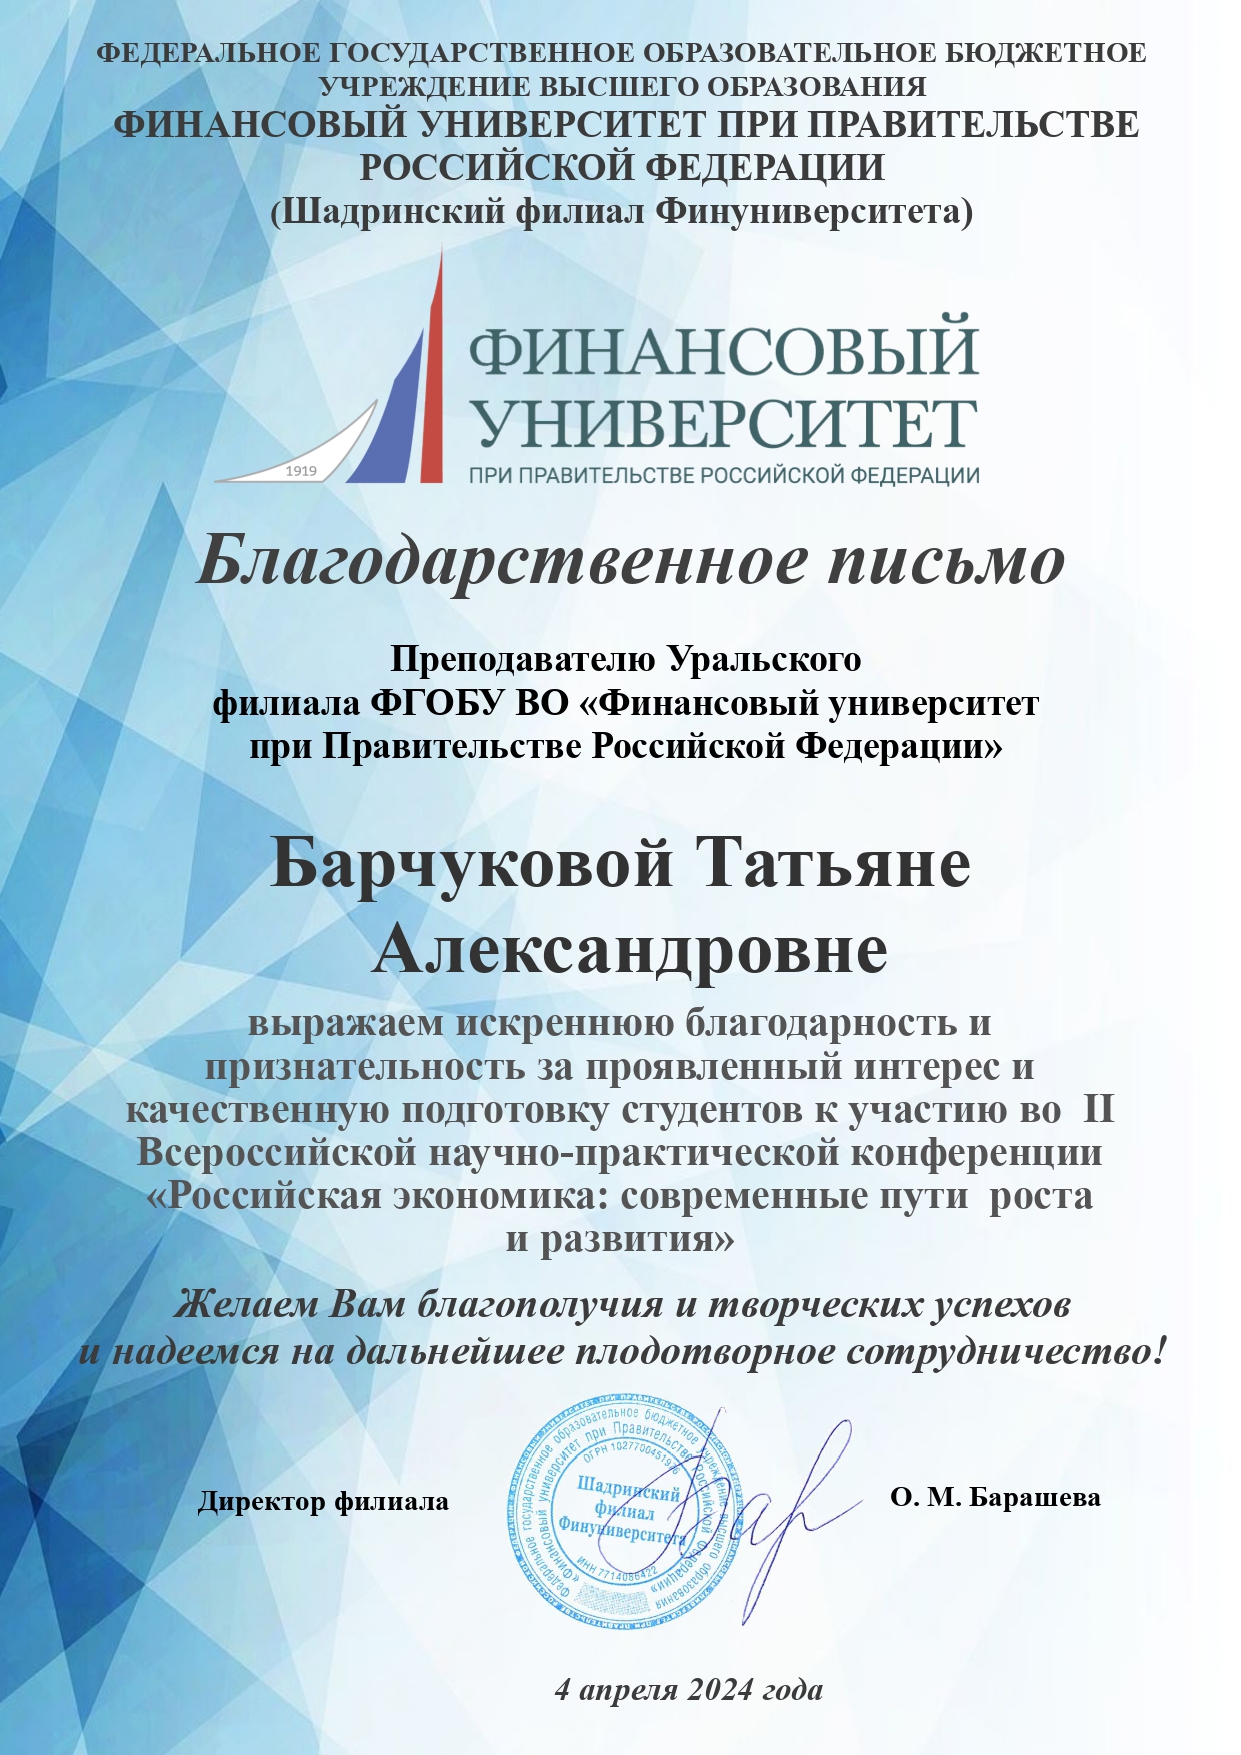 Наши победы на Второй Всероссийской научно-практической конференции «Российская экономика: современные пути роста и развития»